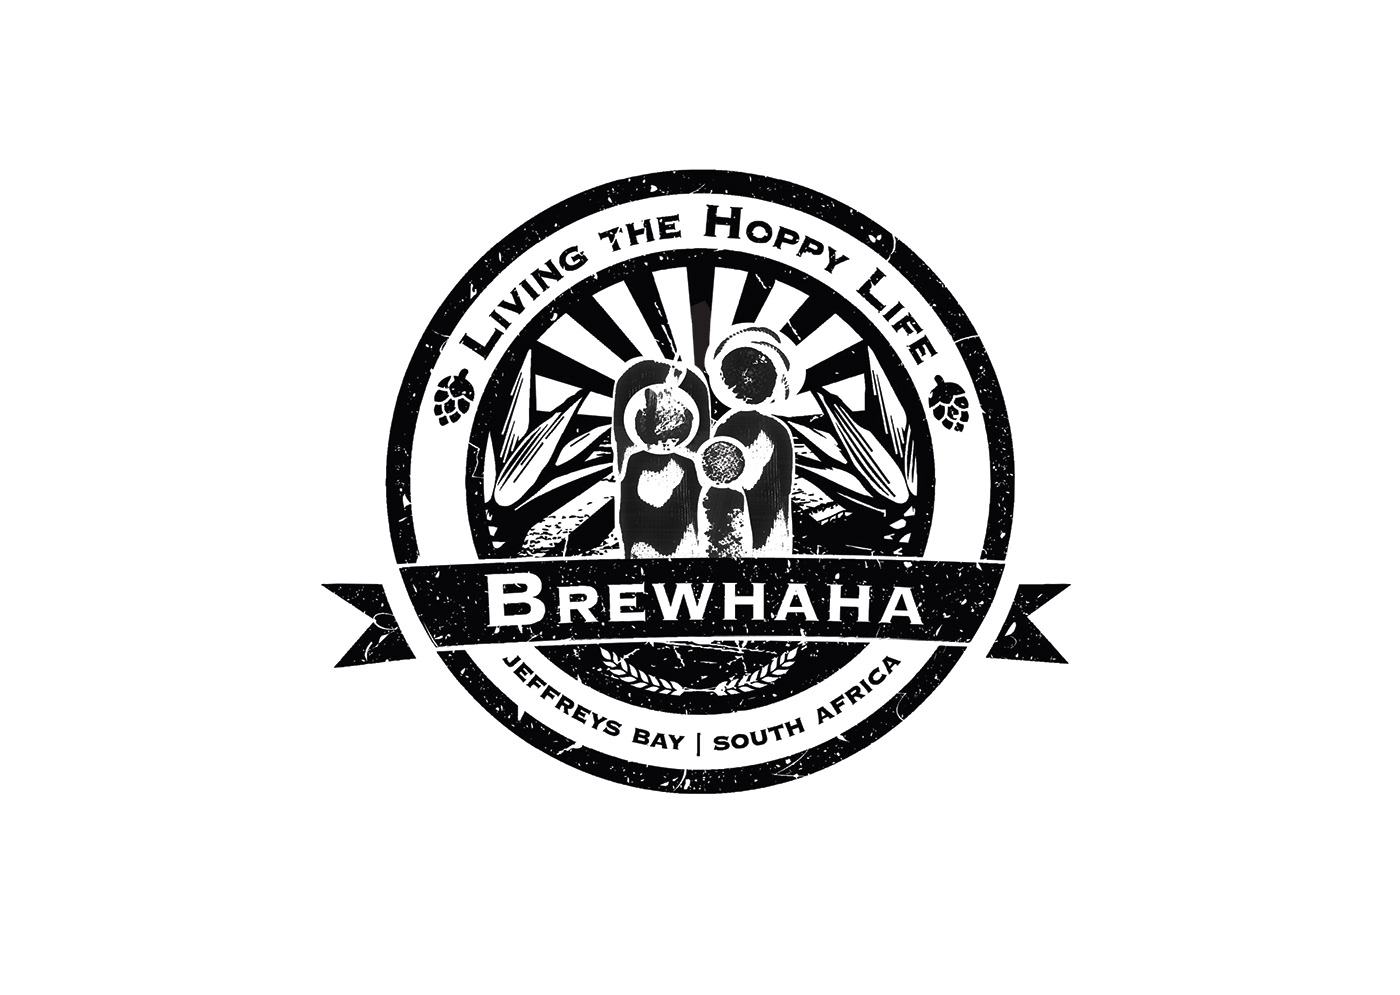 BrewHaHa
